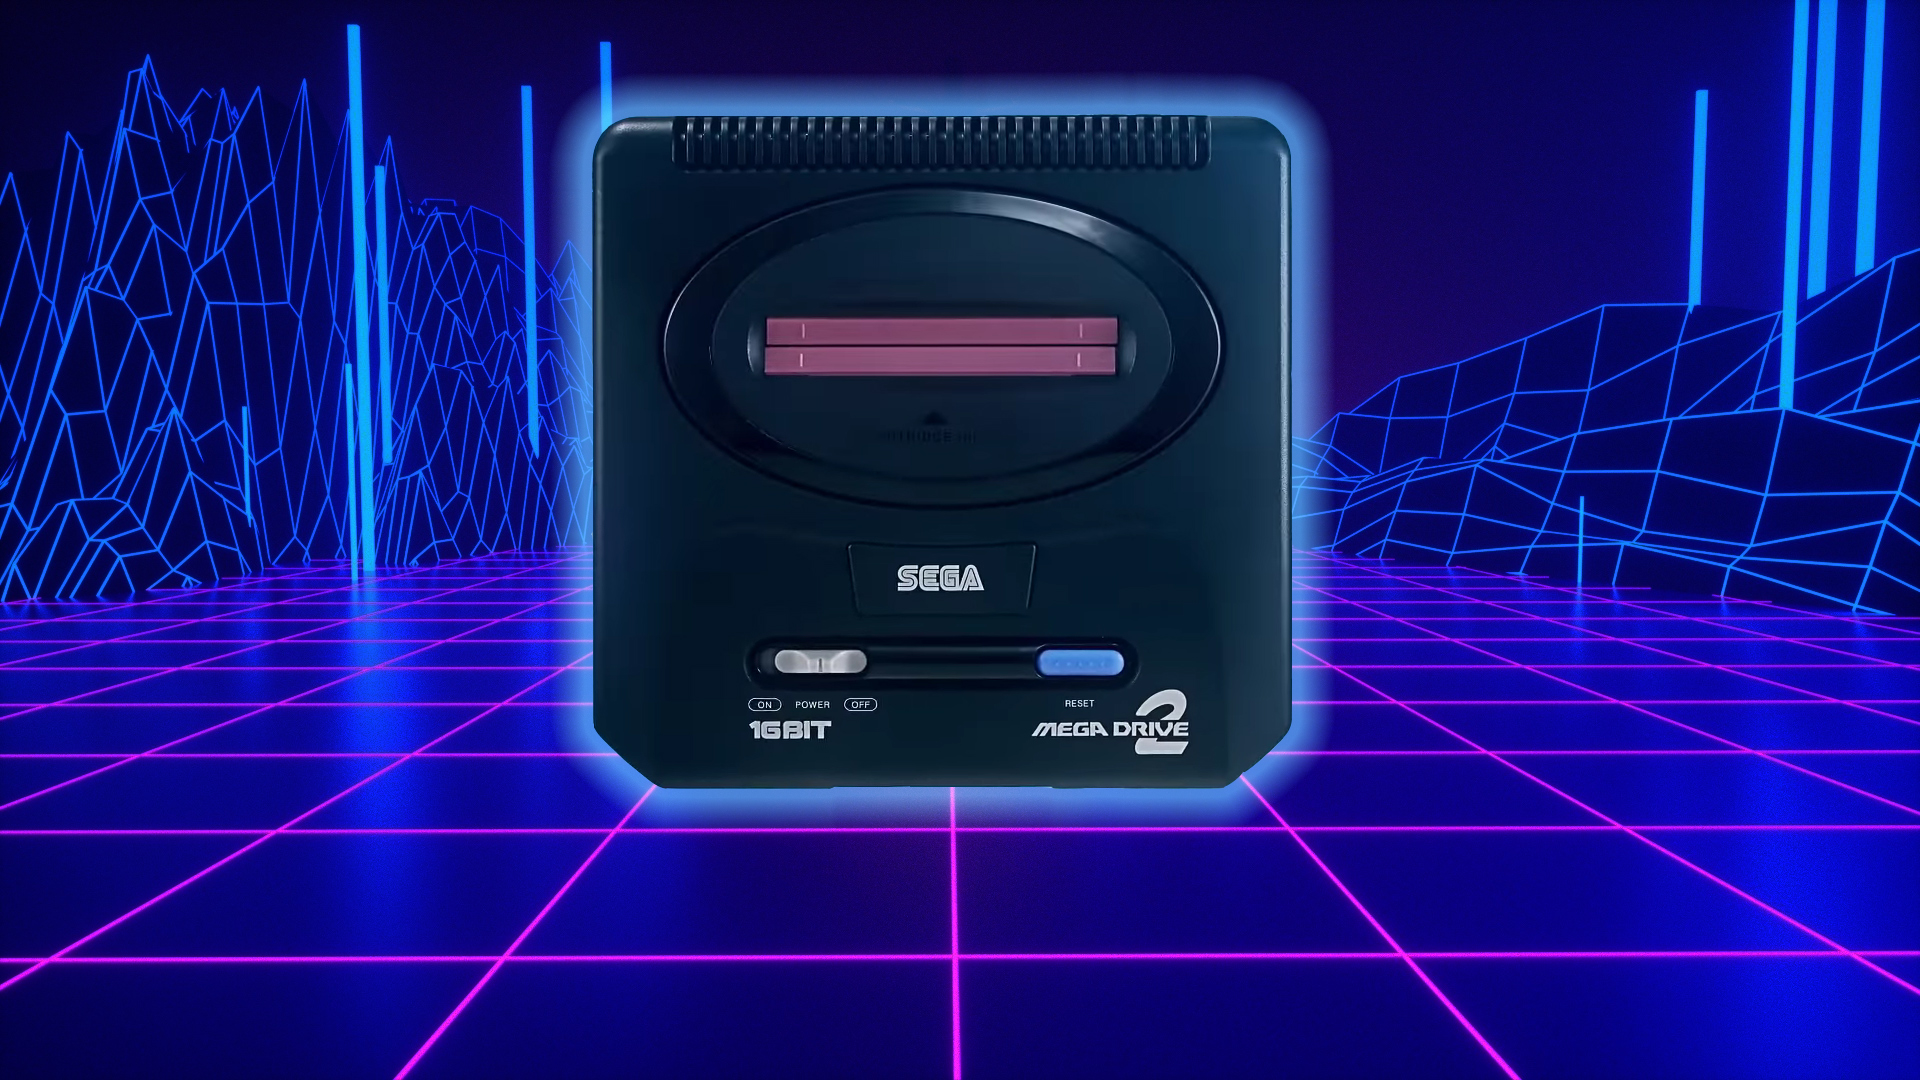 Mega Drive 2 Mini - Pas encore de date en France, mais un drôle d’accessoire